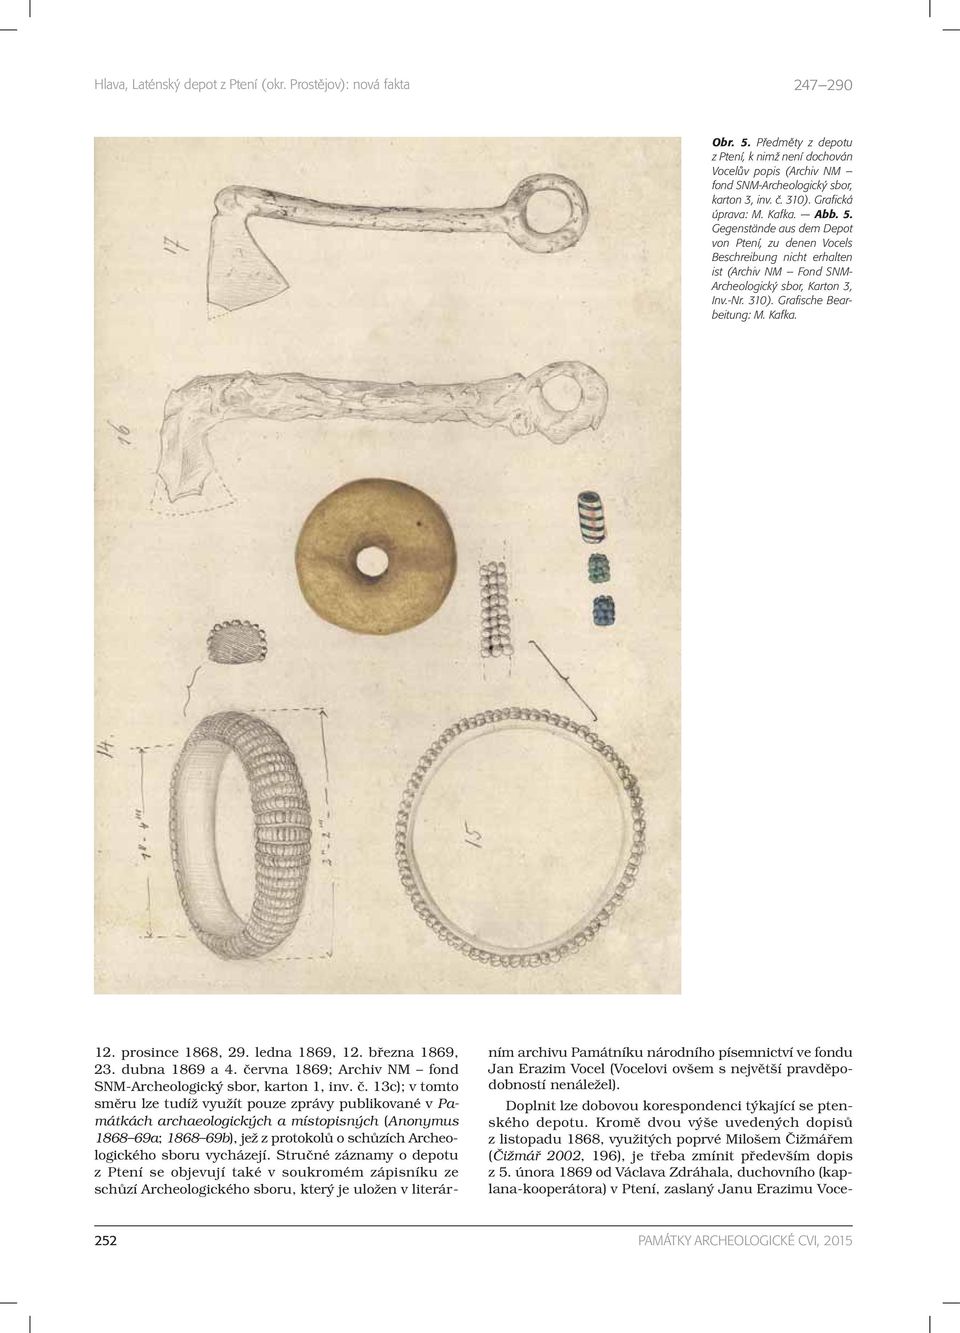 rvna 1869; Archiv NM fond SNM-Archeologický sbor, karton 1, inv. č.